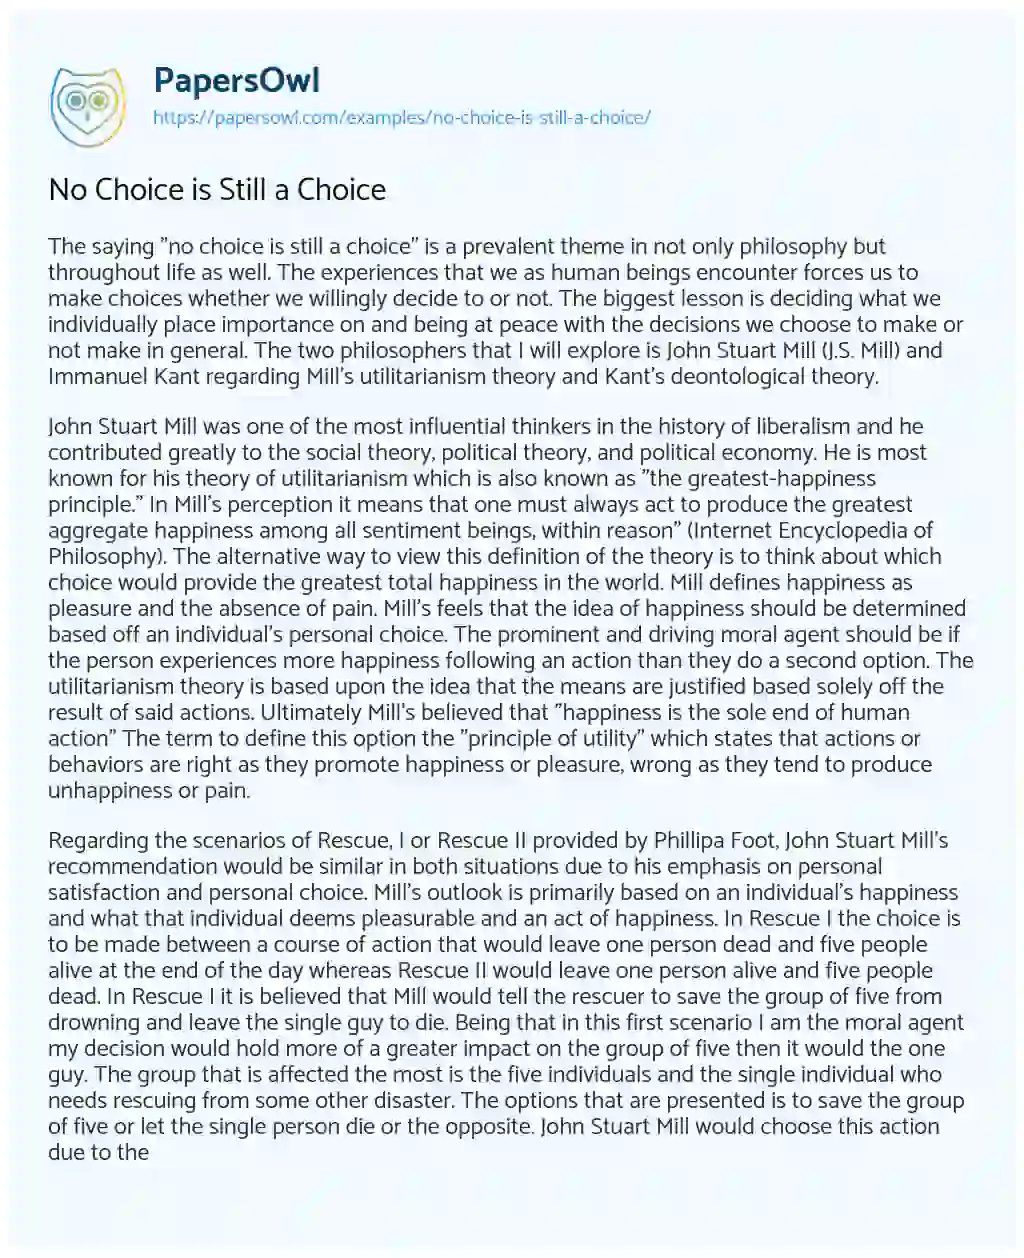 Essay on No Choice is Still a Choice